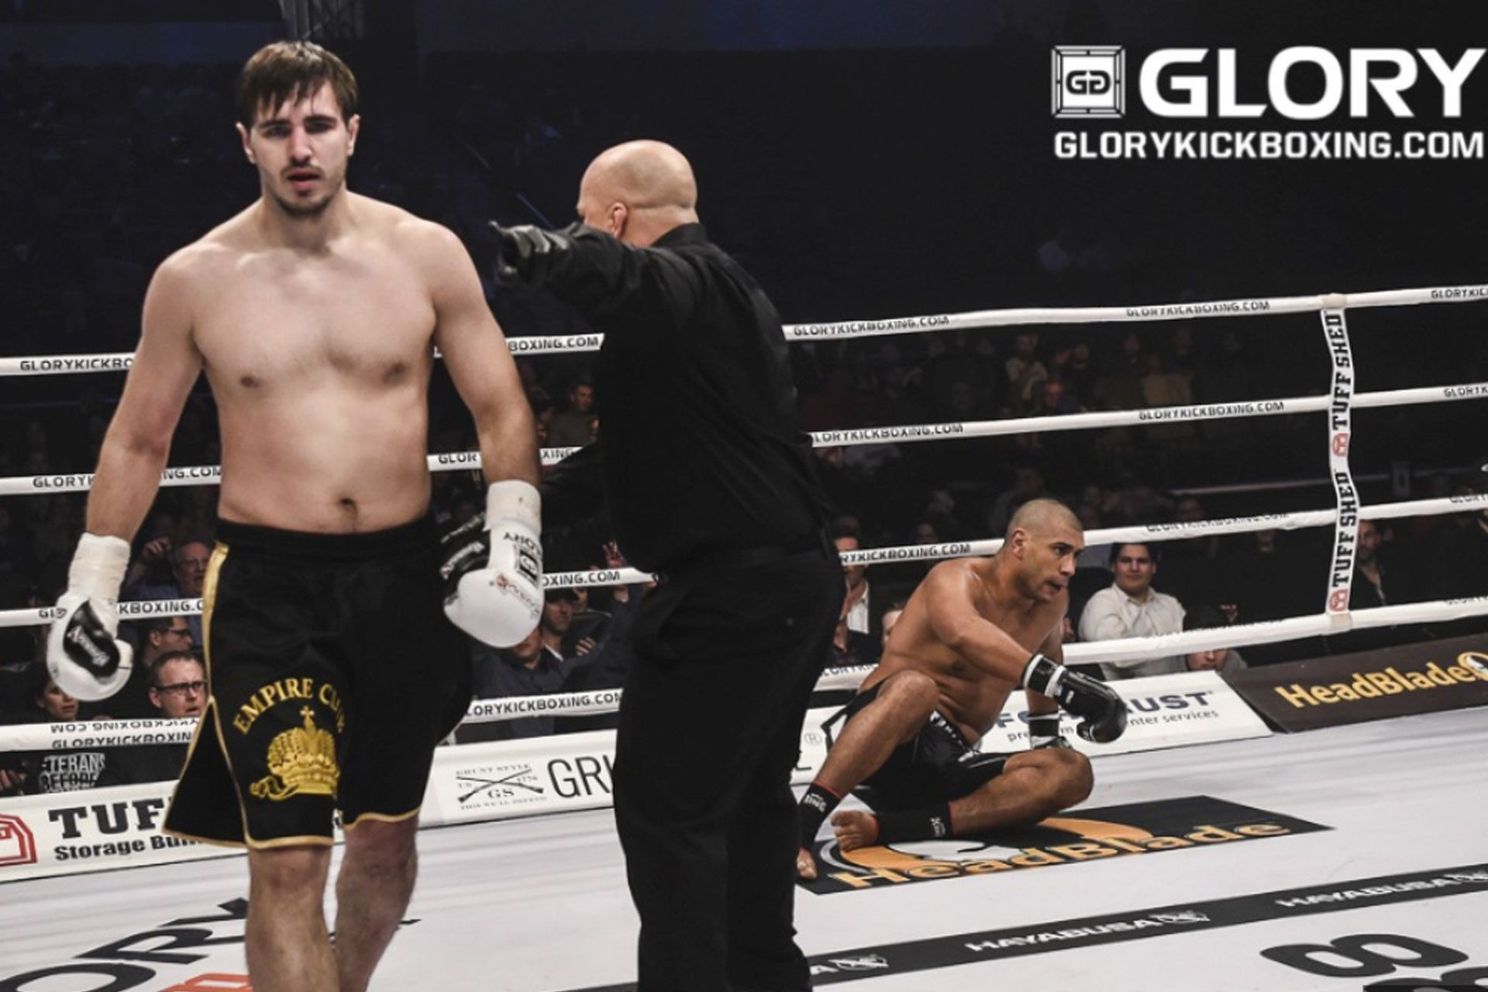 Ex-Glory's Vakhitov wil tegen Pereira bij UFC de 1-1 vereffenen: 'Wraakgevecht'